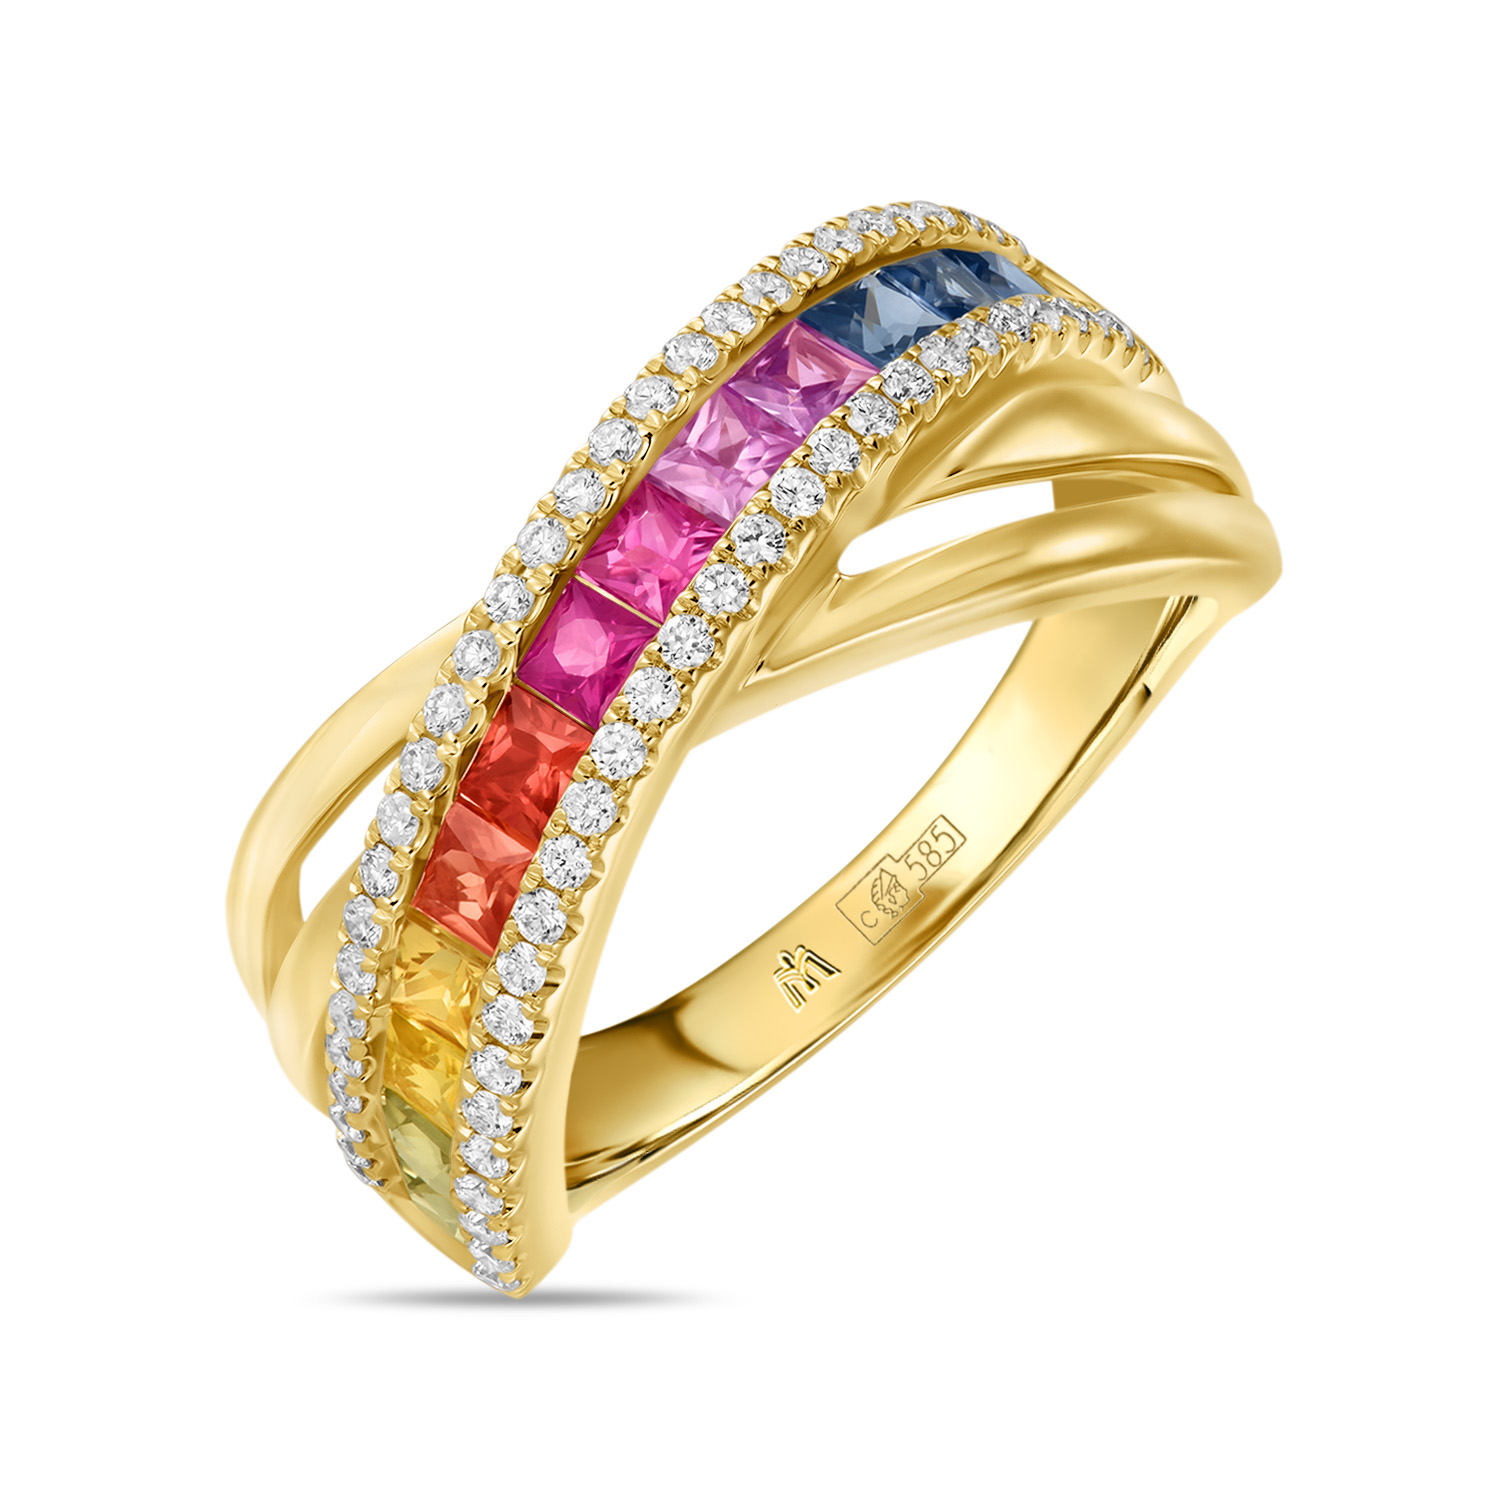 кольца мюз кольцо с топазом бриллиантами и цветными сапфирами Кольца МЮЗ Кольцо с бриллиантами, сапфирами и цветными сапфирами